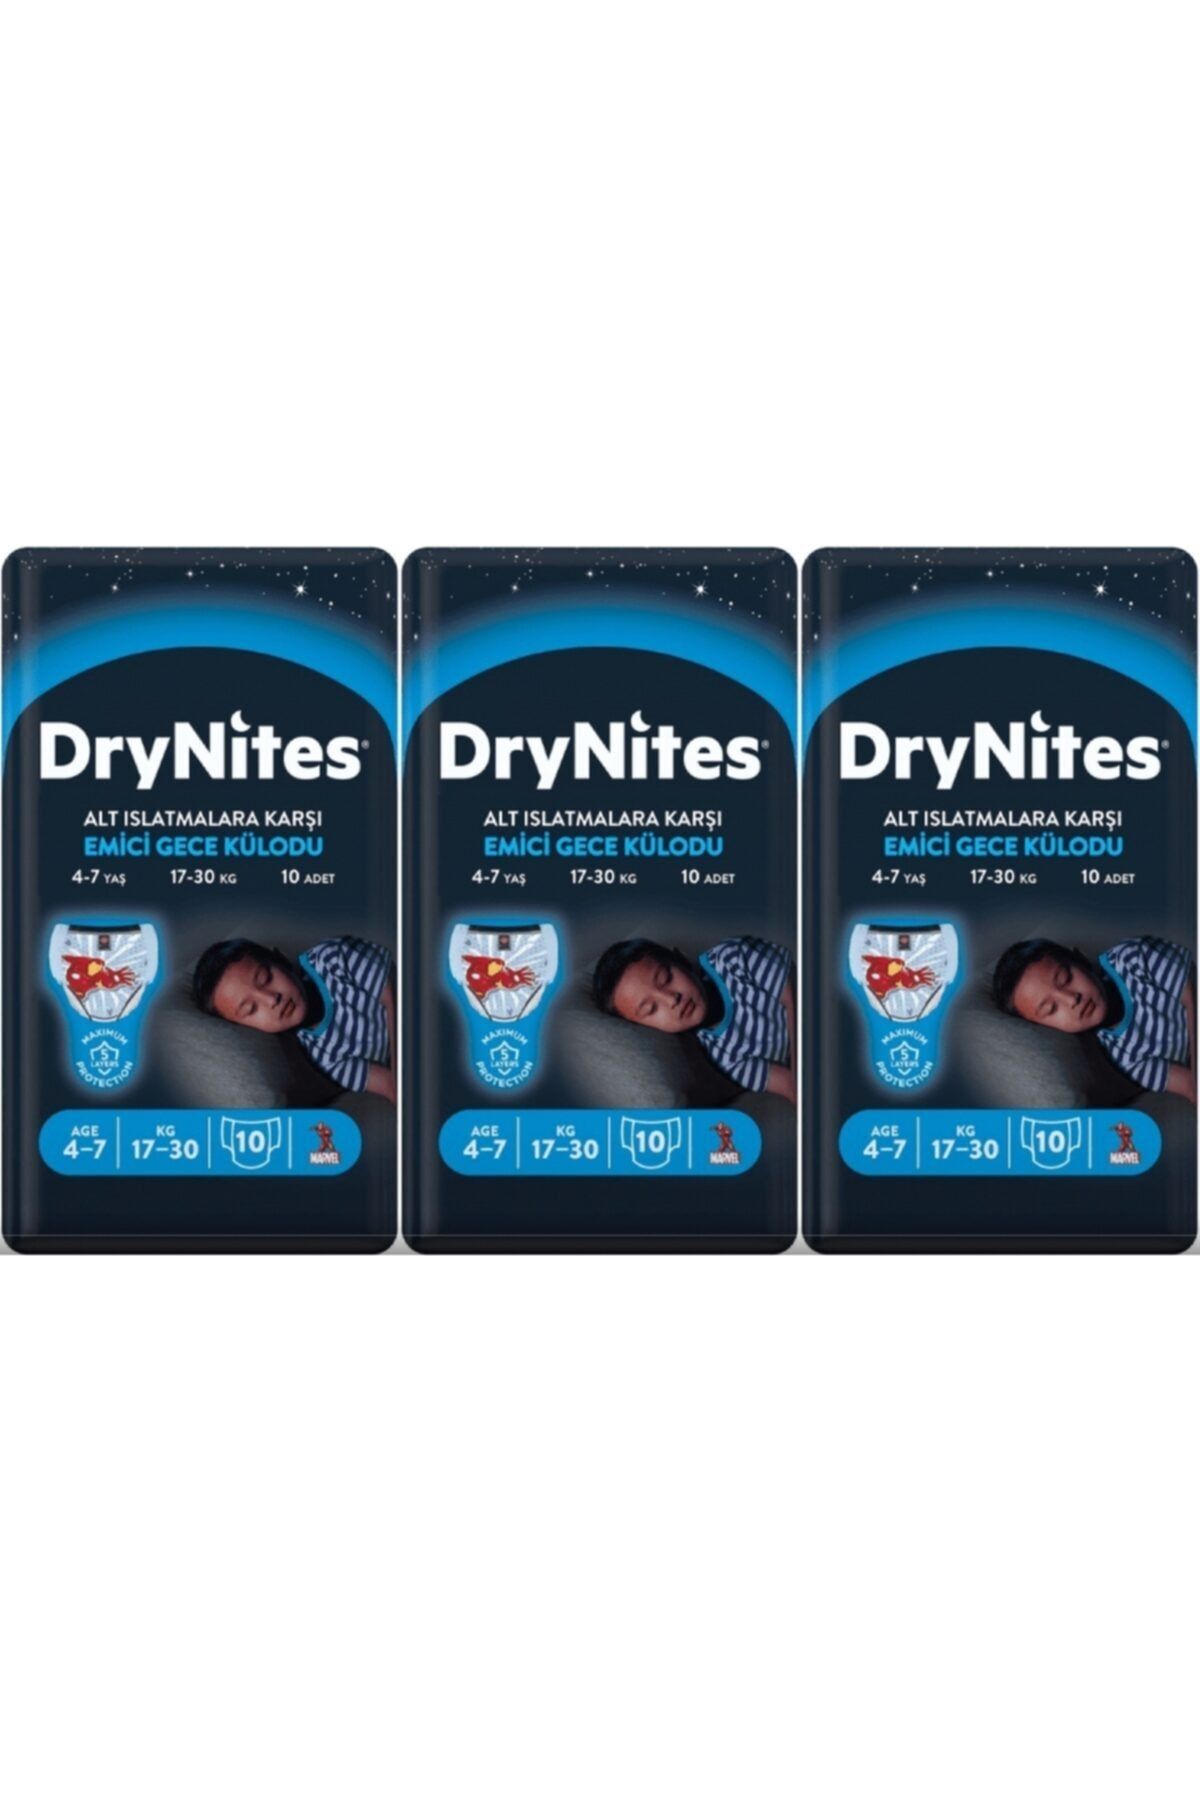 Huggies Drynites Erkek Emici Gece Külodu 4-7 Yaş 30 Adet